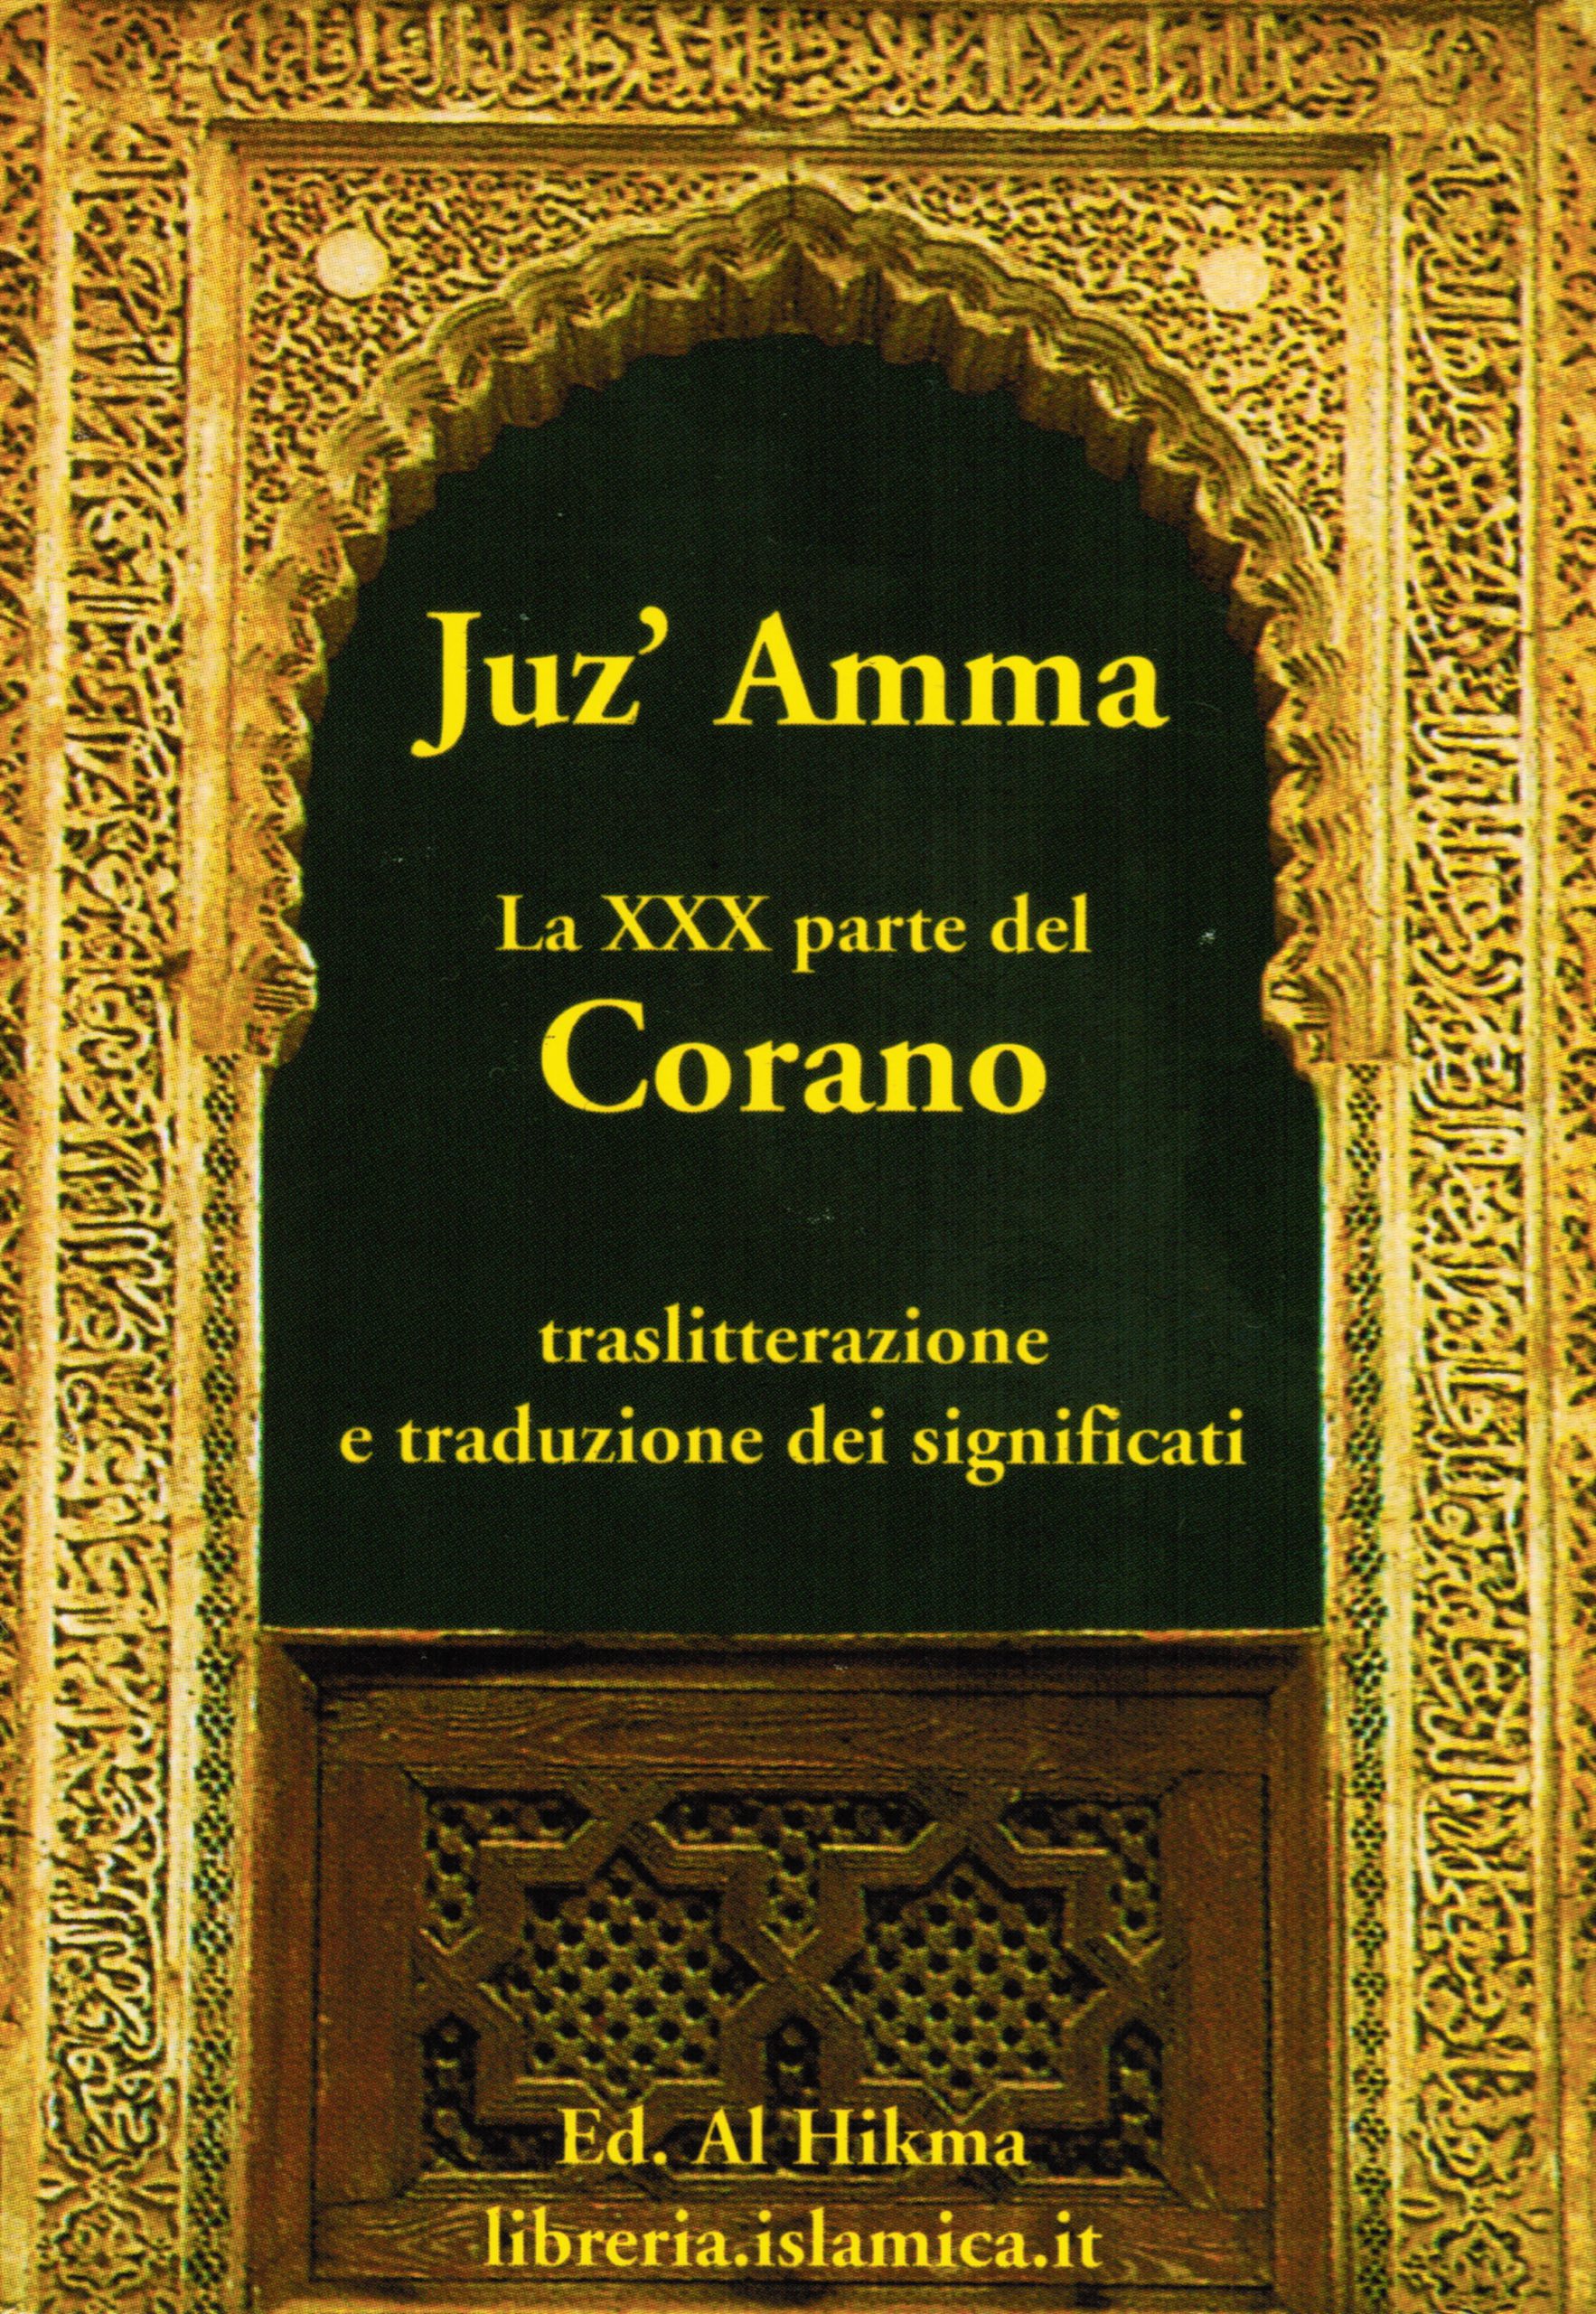 Traslitterazione XXX juz del Corano